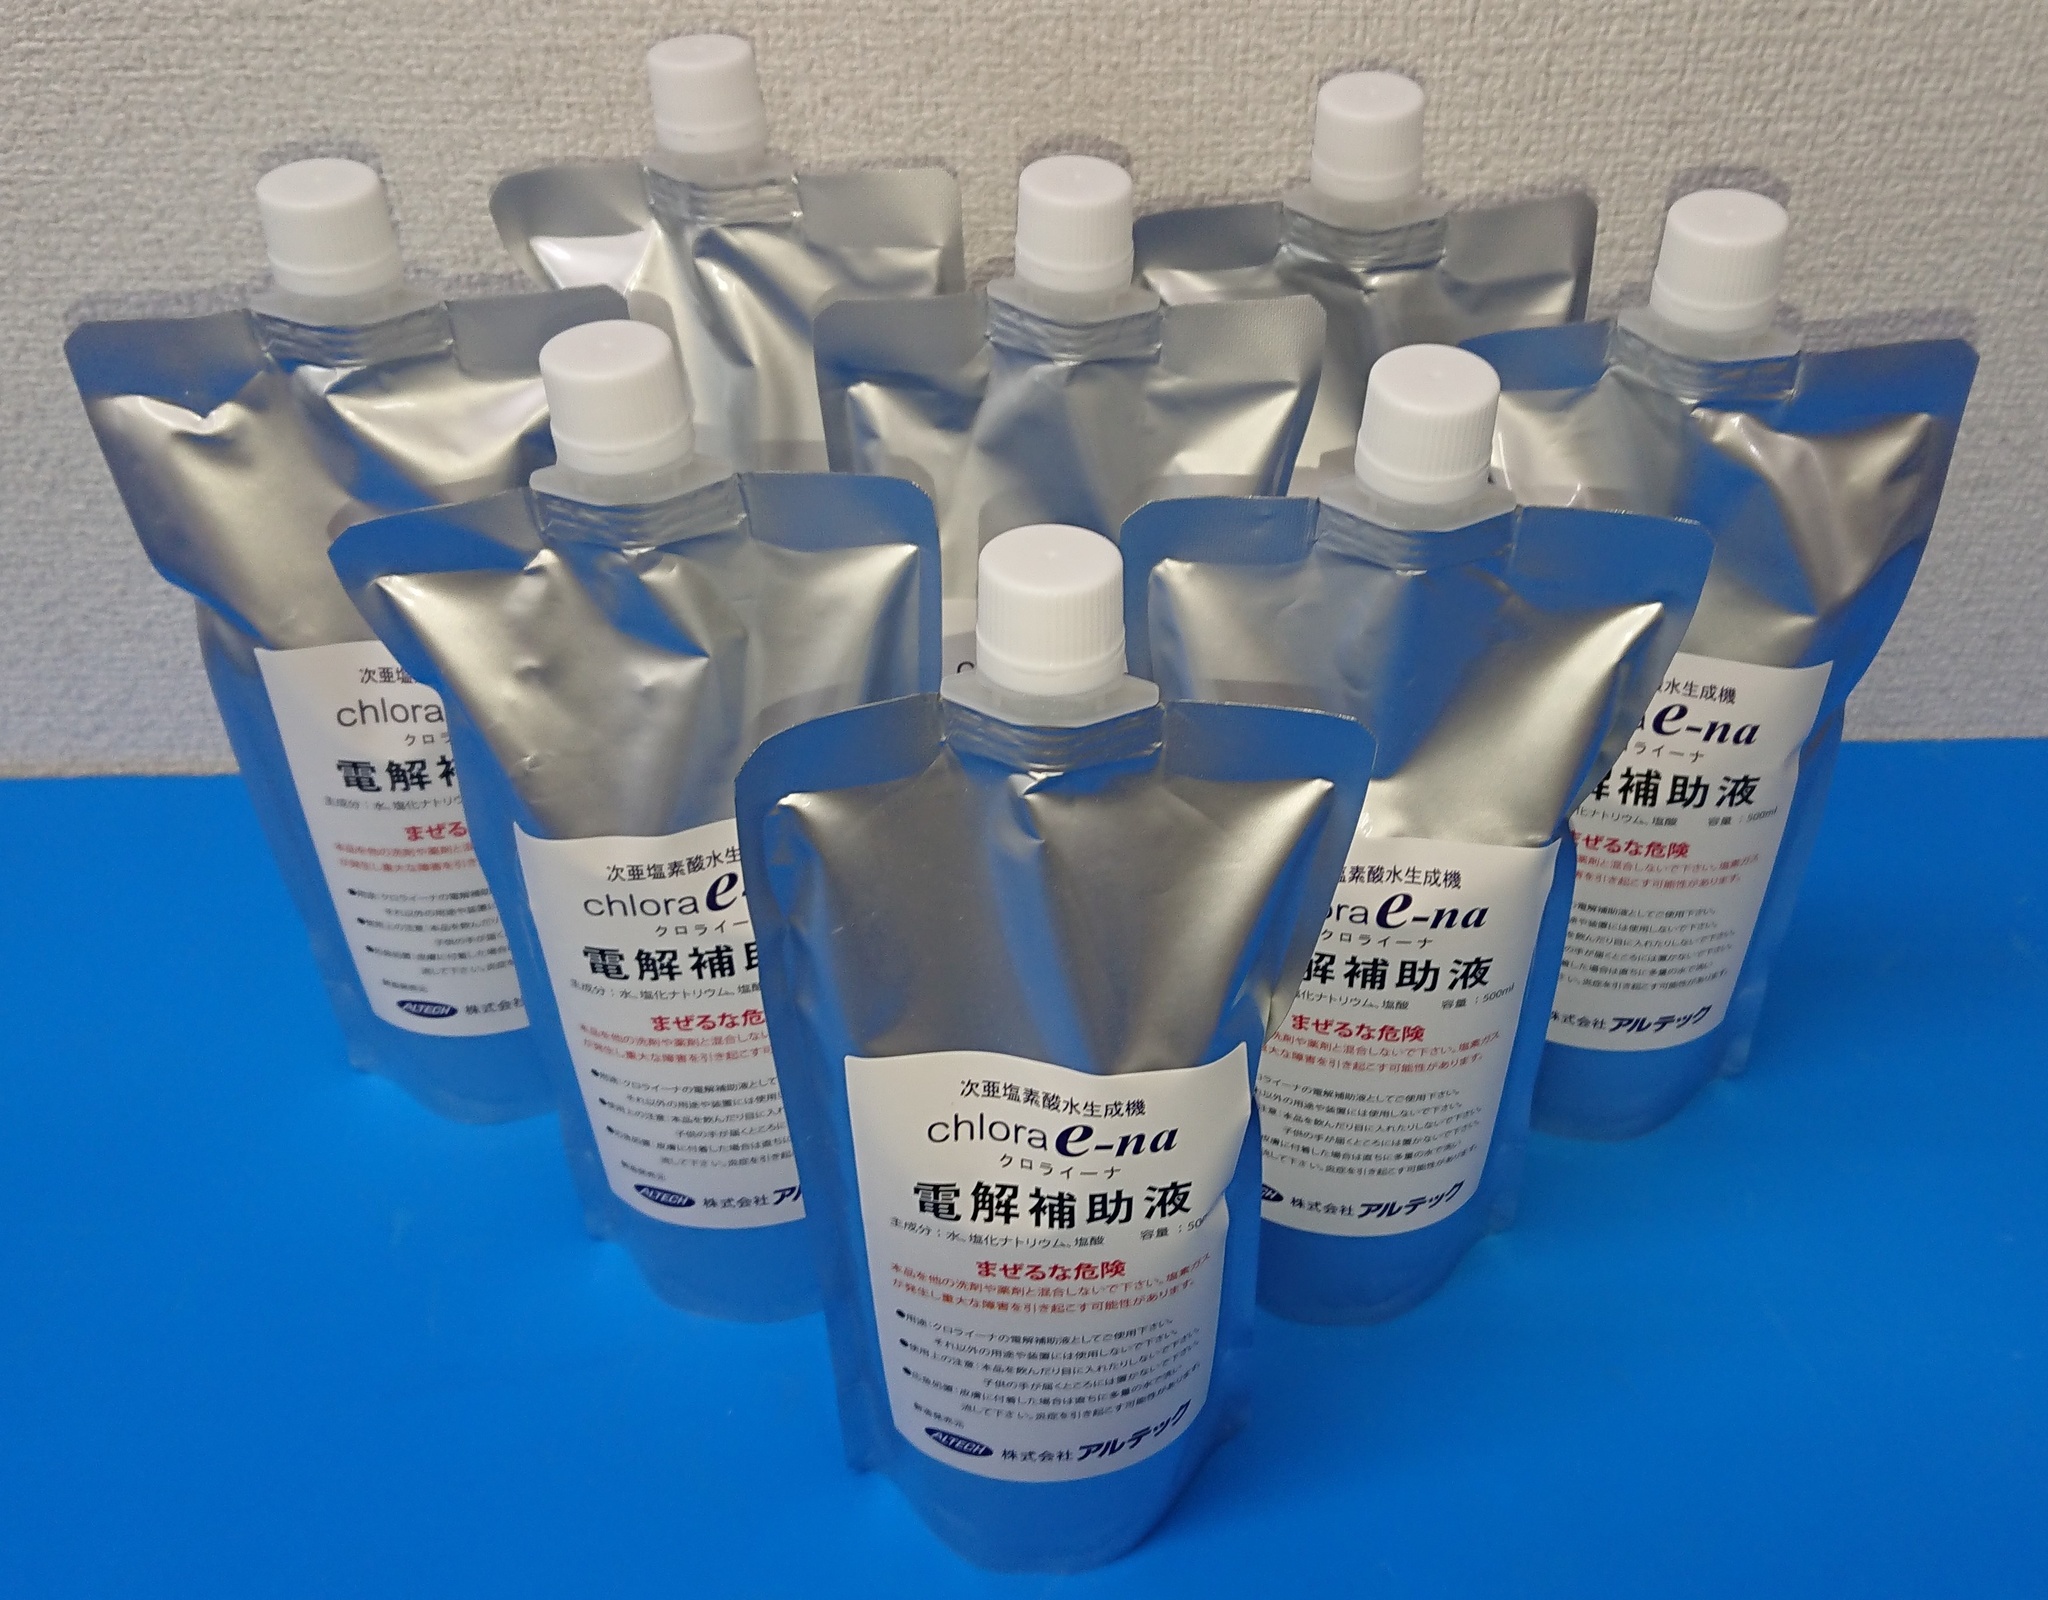 日本製 微酸性水生成器 クロライーナ・ポータブル AL-791 次亜塩素酸水生成 微酸性水 微アルカリ水 生成可能 電解次亜塩素酸水生成器